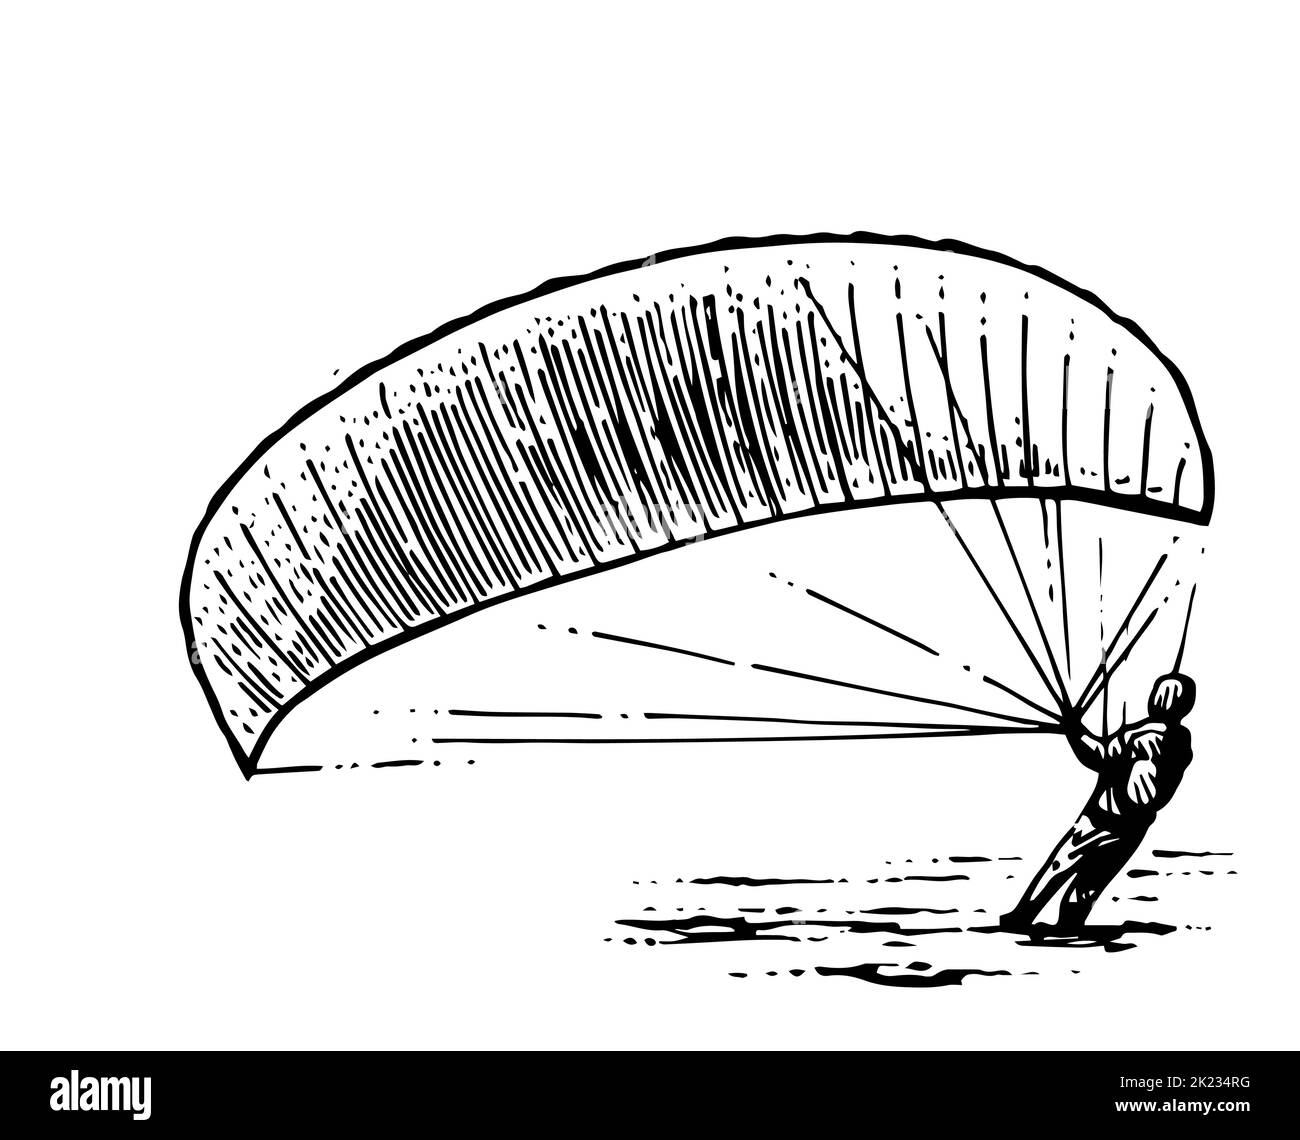 Gleitschirmflieger parachutist Vorbereitung zum Start. Gleitschirm mit Fallschirm. Air Extremsport. Kontrollierter Höhenflug. Handgezeichnete Umrissskizze. Iso Stock Vektor